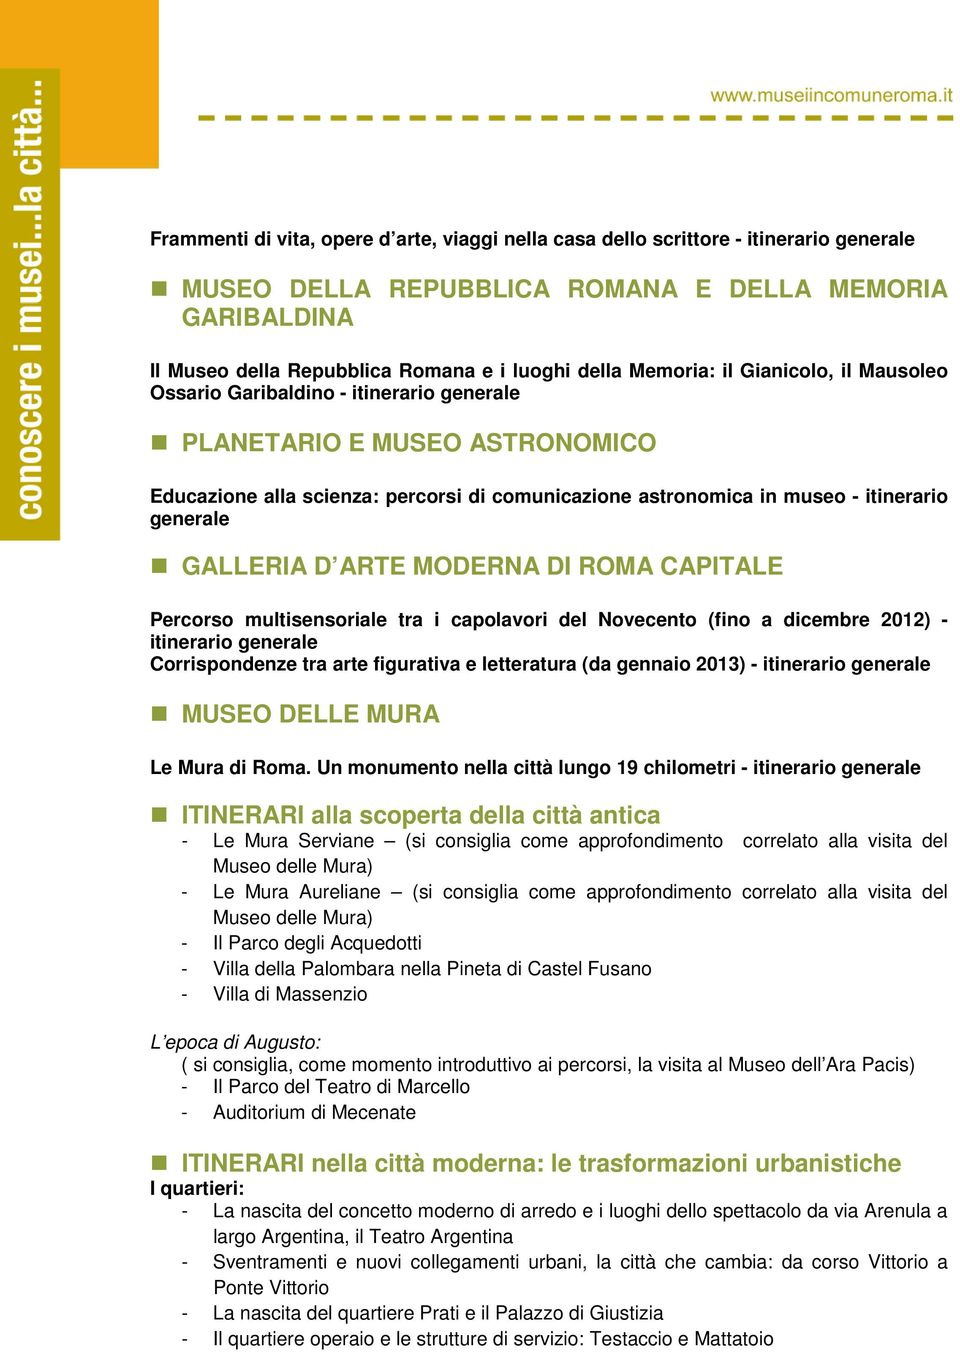 ROMA CAPITALE Percorso multisensoriale tra i capolavori del Novecento (fino a dicembre 2012) - itinerario Corrispondenze tra arte figurativa e letteratura (da gennaio 2013) - itinerario MUSEO DELLE